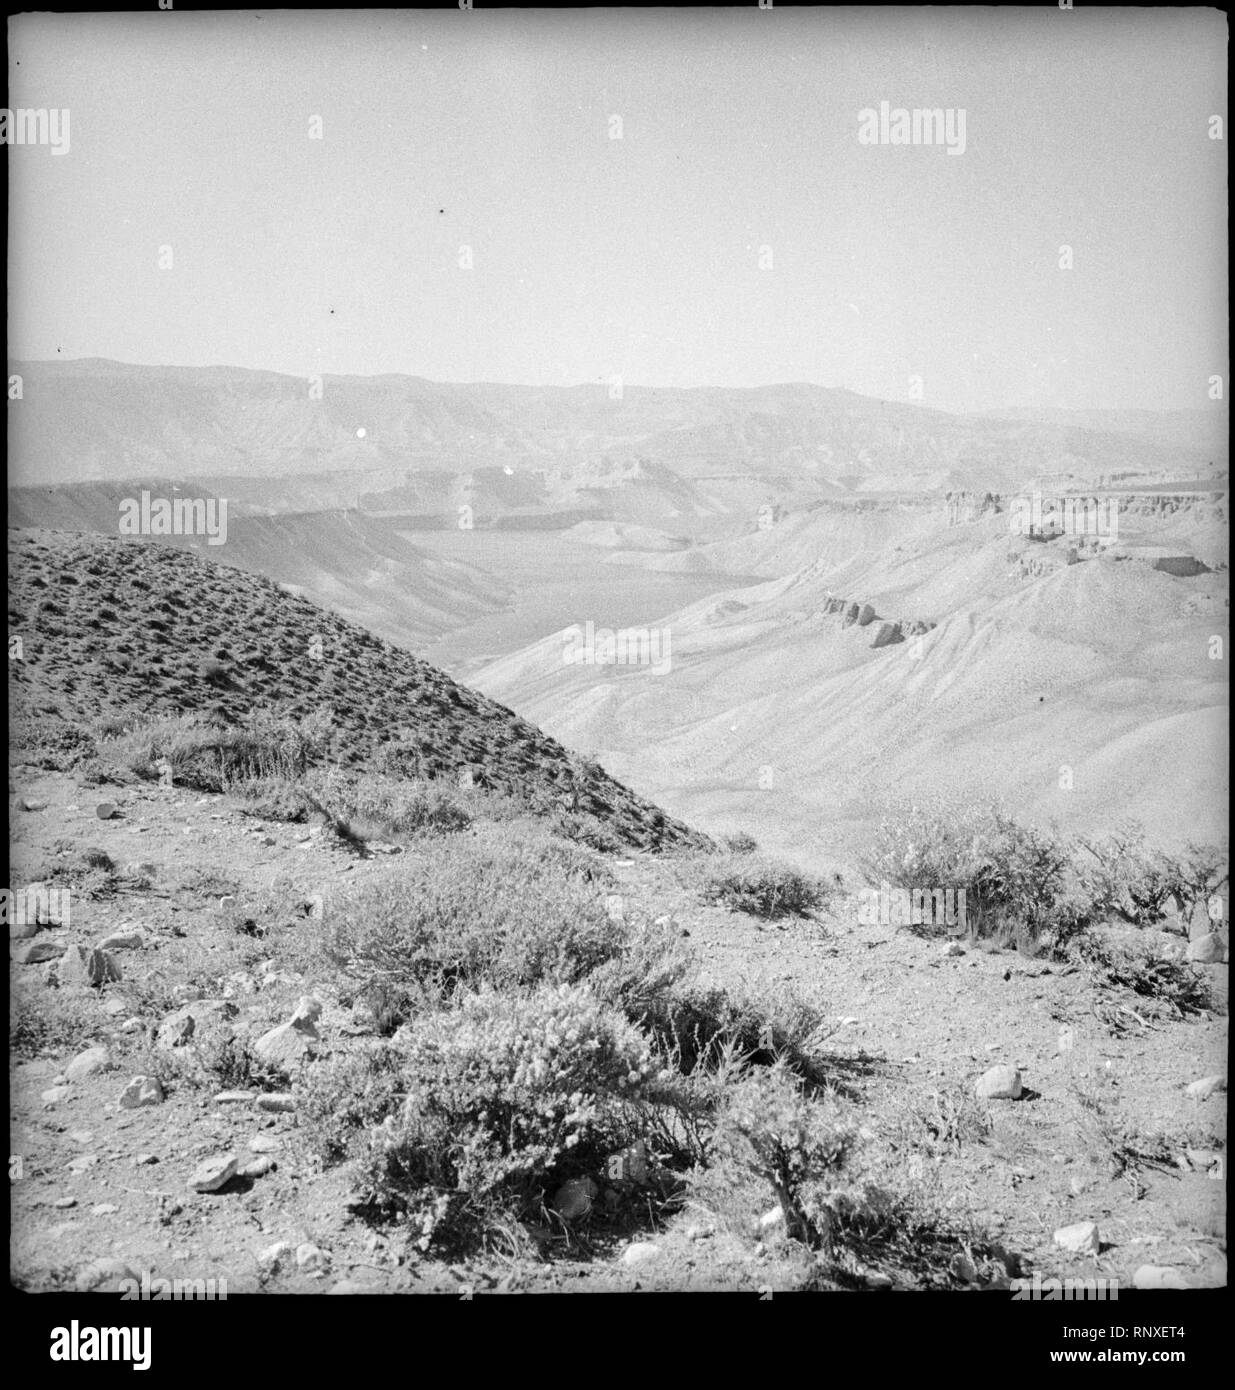 CH-NB - Afghanistan, Band-i-Emir, Band-i-Amir (Band-e-Amir)- Landschaft - Annemarie Schwarzenbach - SLA-Schwarzenbach-A-5-20-186. Stock Photo